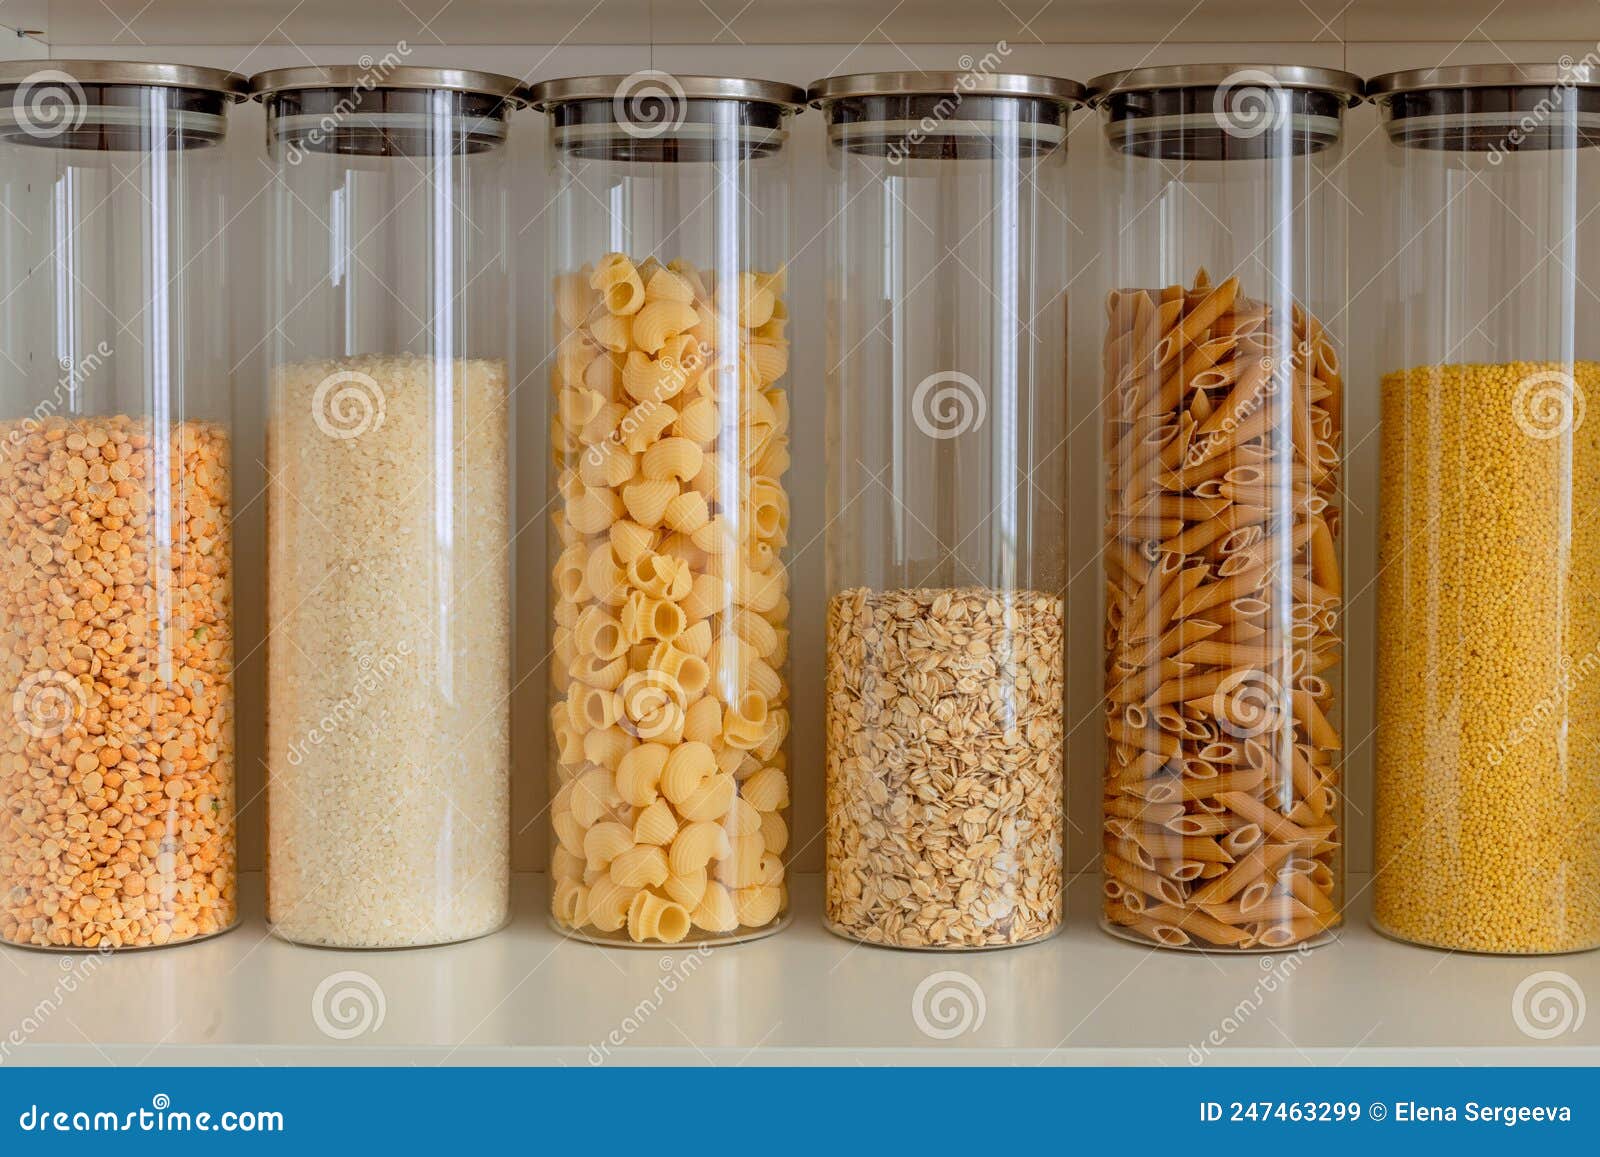 Piselli Di Riso Pasta Avena Semi Di Cereali in Contenitori Trasparenti in  Vetro Per L'immagazzinamento Da Cucina Ordine Di Cucina Immagine Stock -  Immagine di armadio, contenitori: 247463299